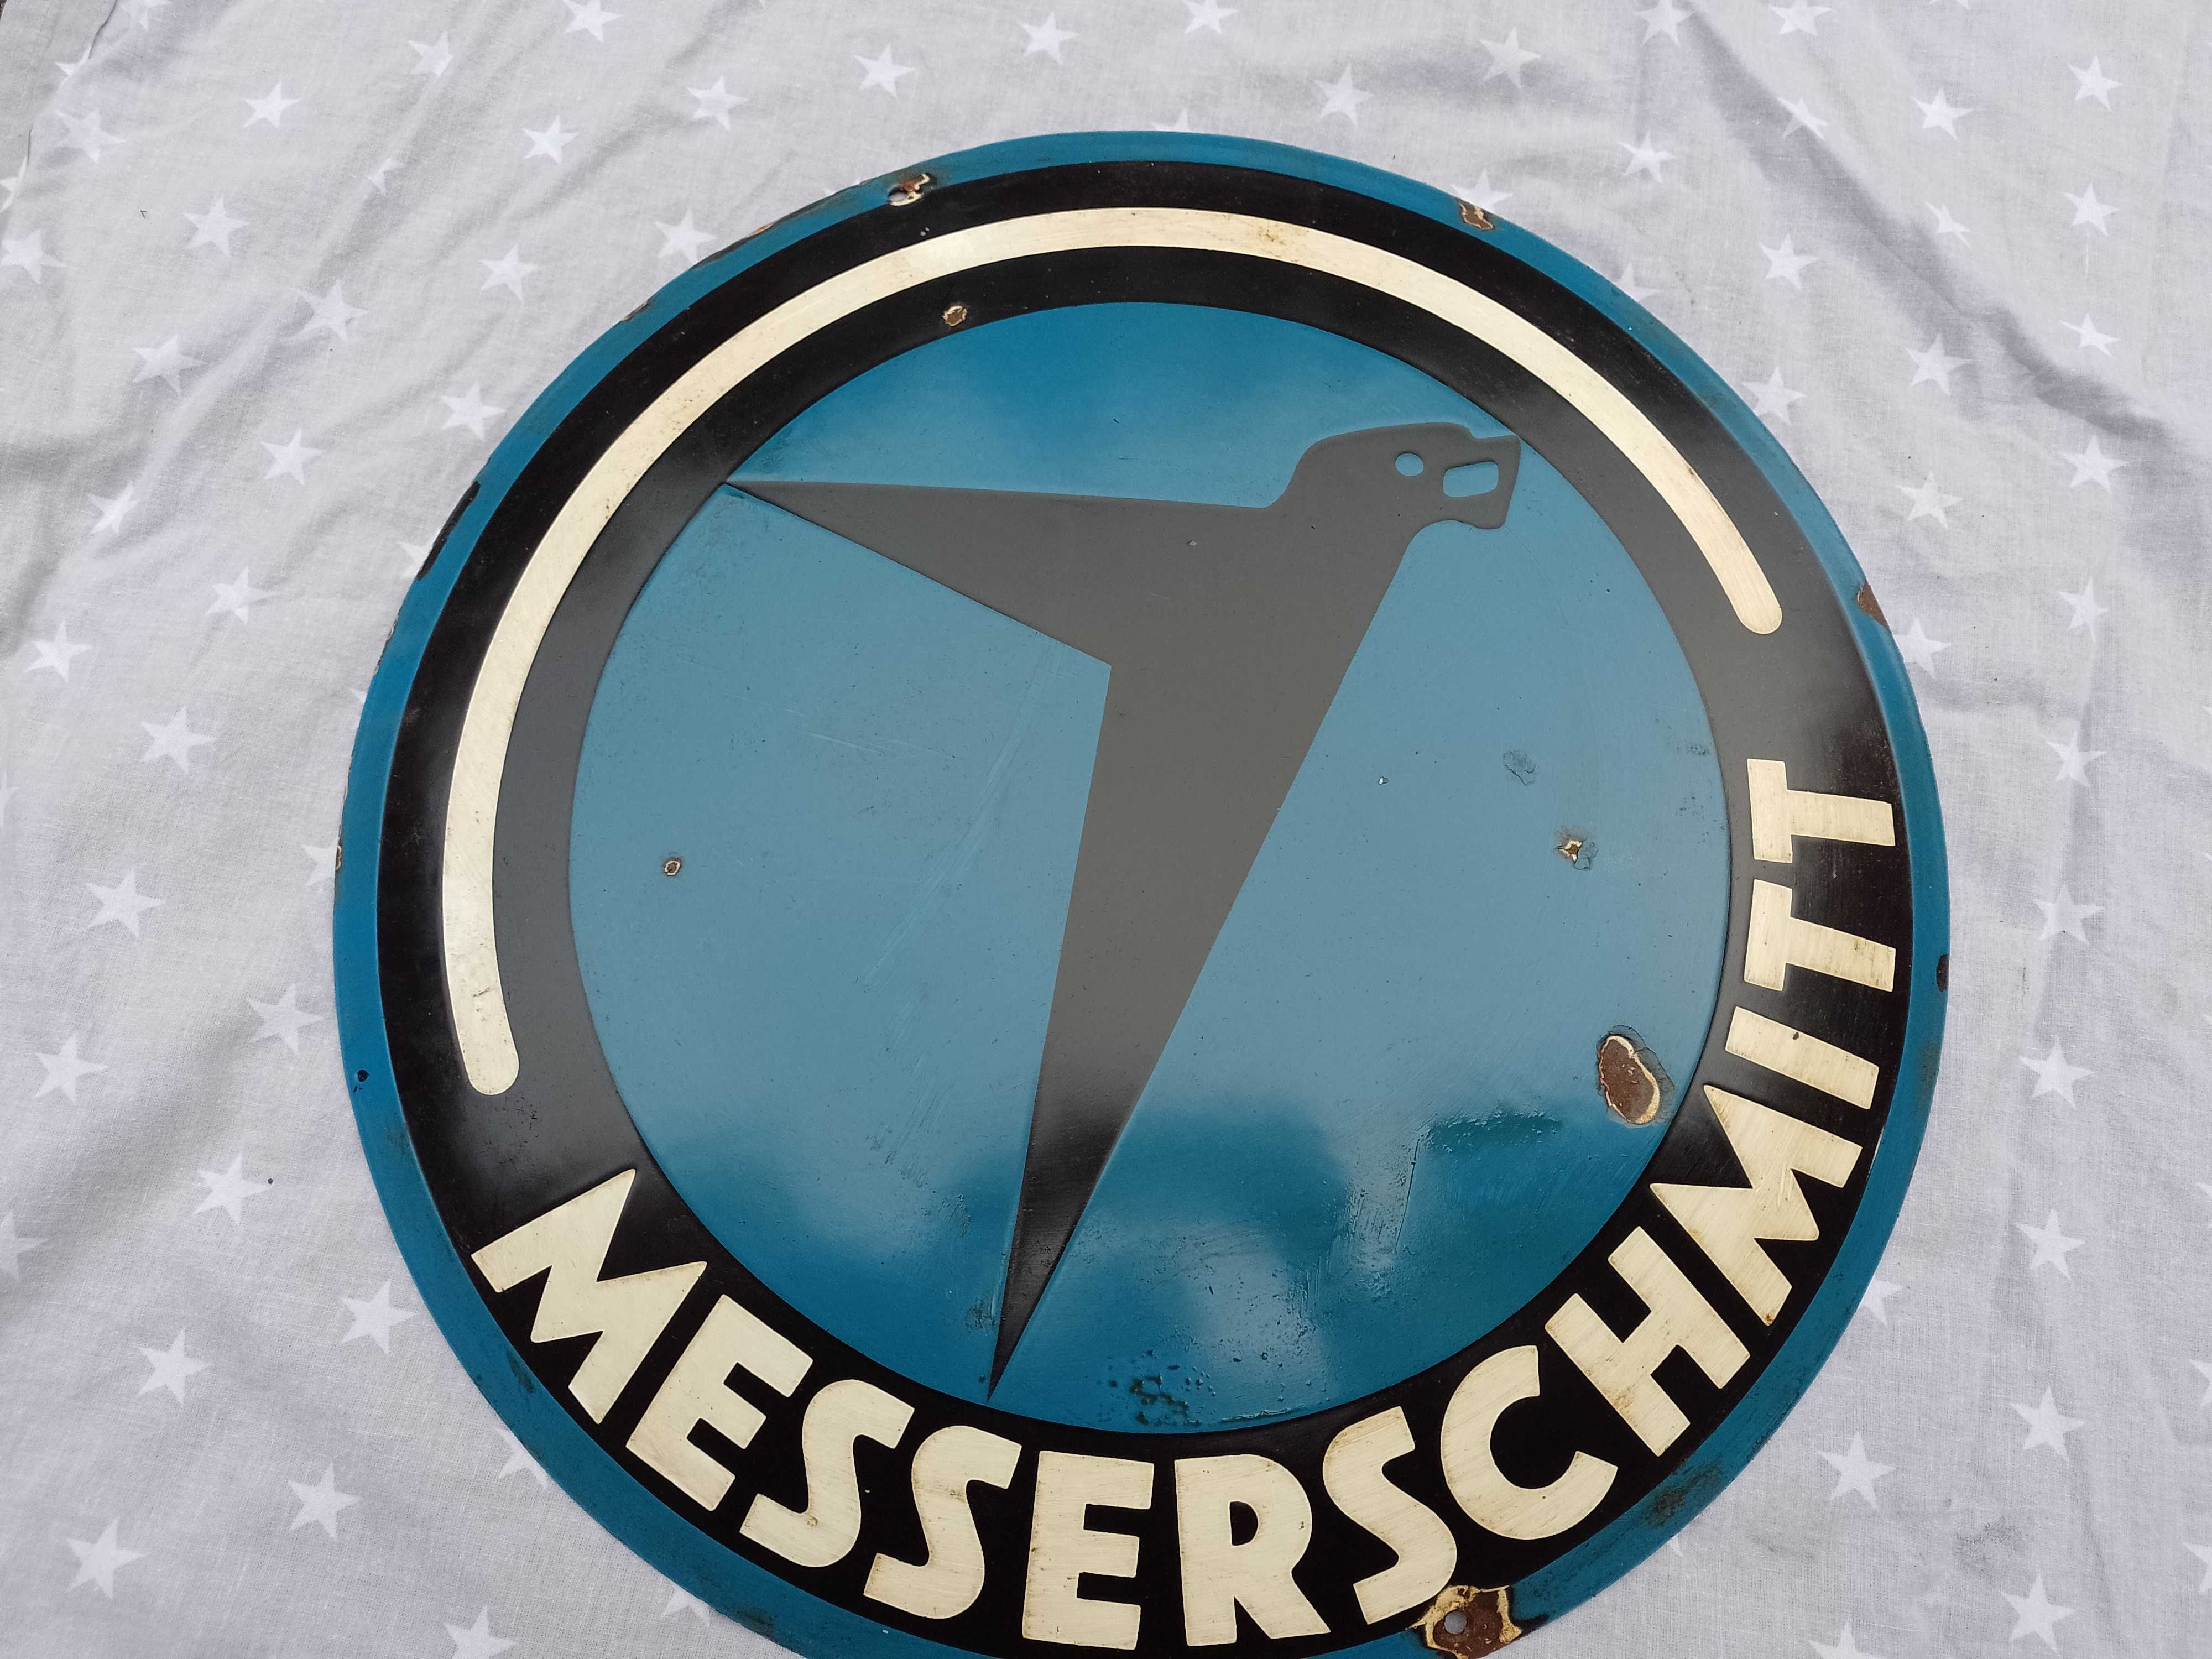 szyld messerschmitt samolot tablica